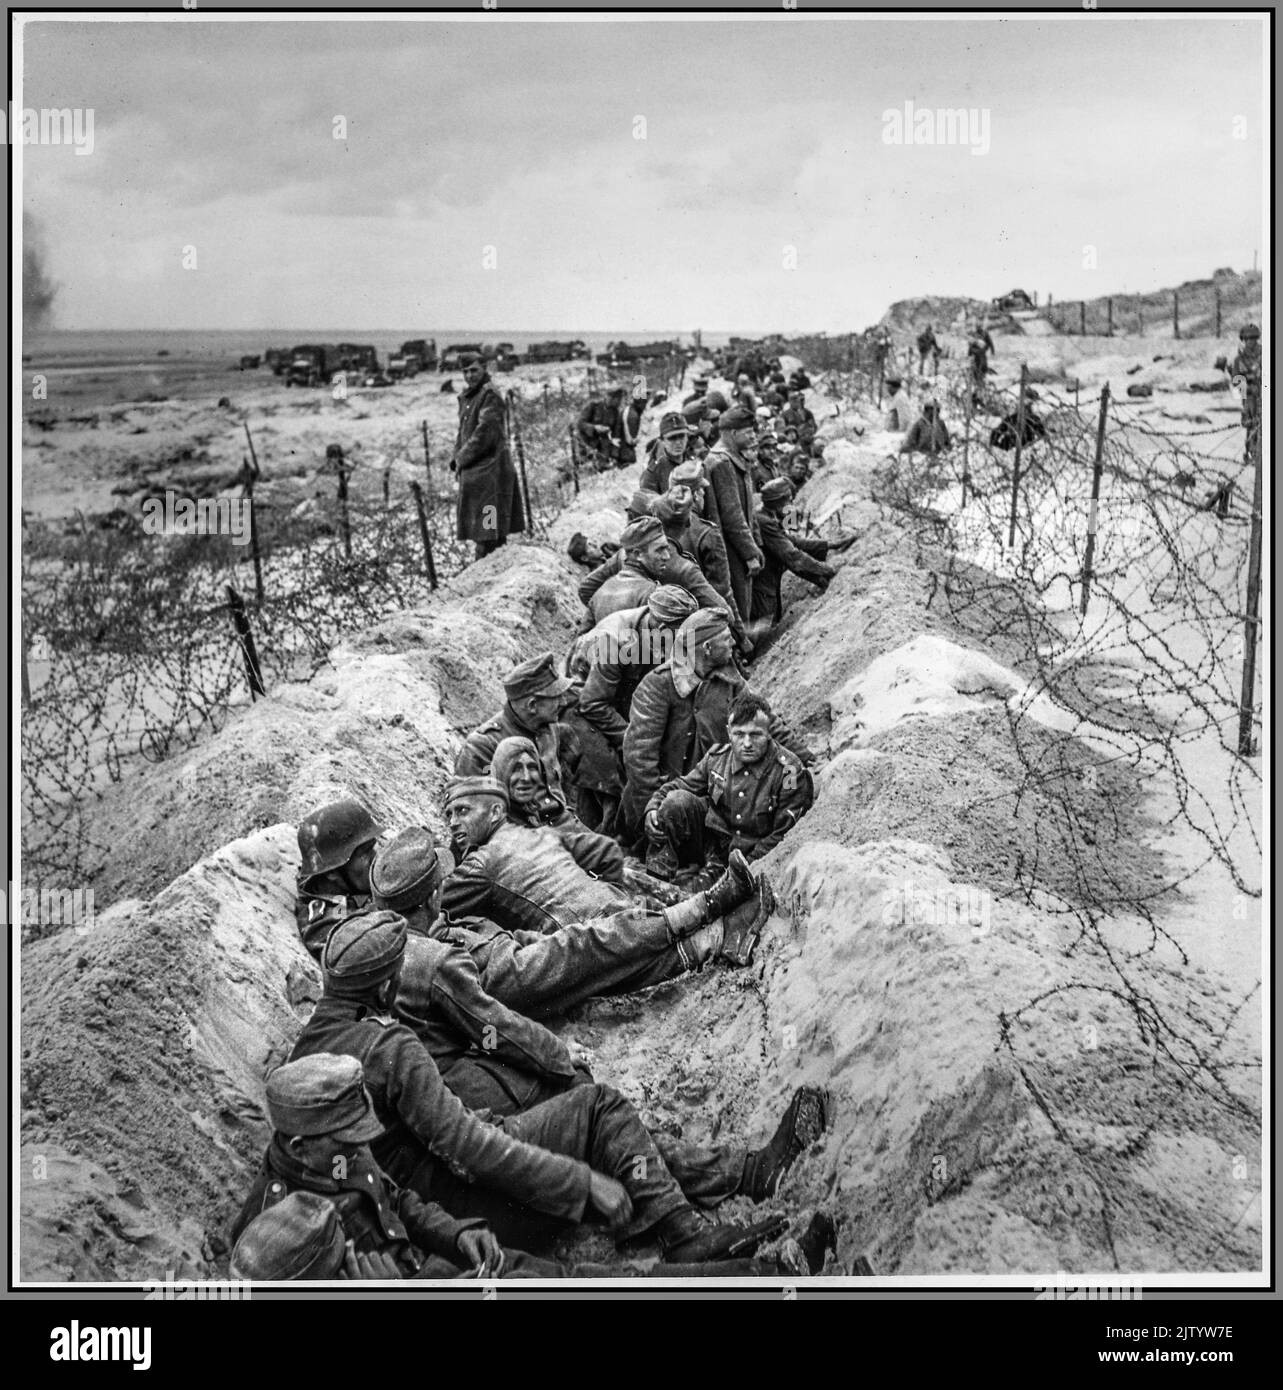 WW2 l'Allemagne nazie les plages de Normandie après le jour J 1944 avec les prisonniers allemands nazis de la guerre après le jour J avec les soldats américains les protégeant avant le transport Seconde Guerre mondiale, au nord de la France Banque D'Images